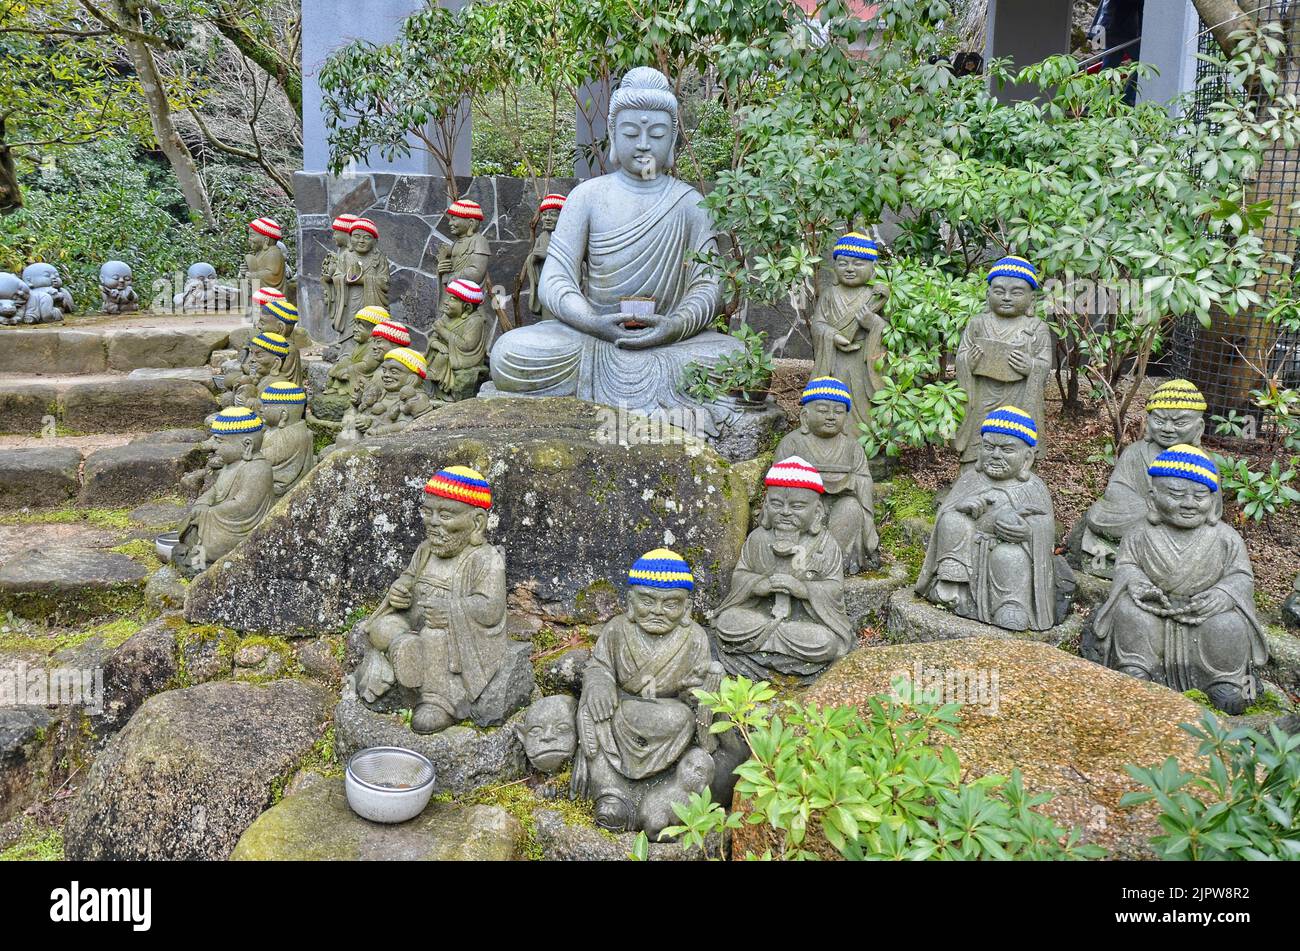 Daisho-in è un tempio buddista situato sul Monte Misen, sull'isola di Miyajima, in Giappone. Qui si possono ammirare centinaia di statue buddiste. Foto Stock